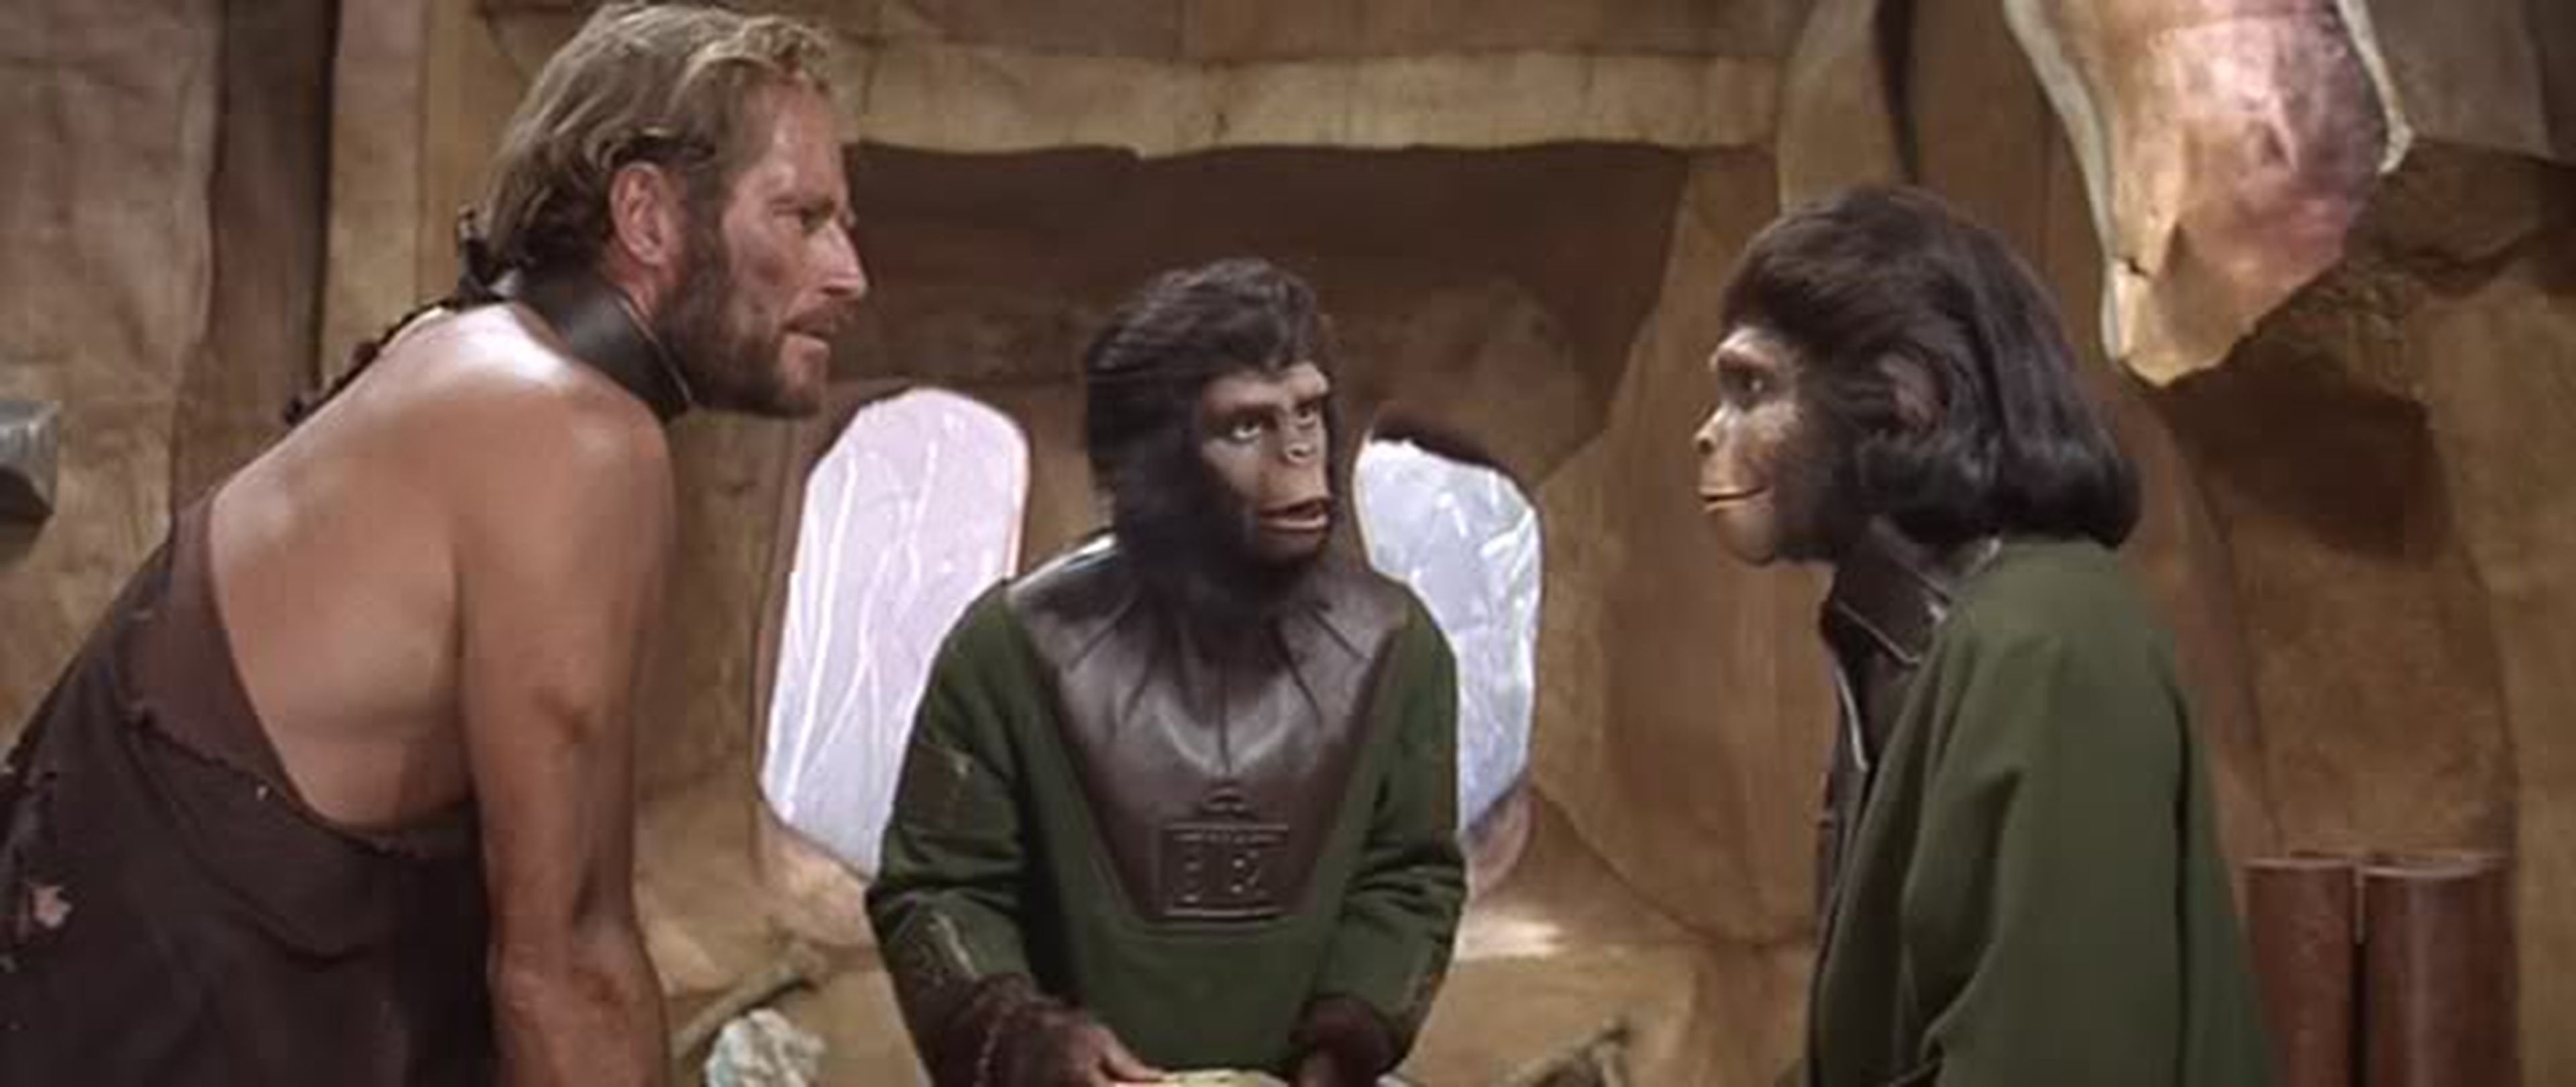 Cine de ciencia ficción: El planeta de los simios